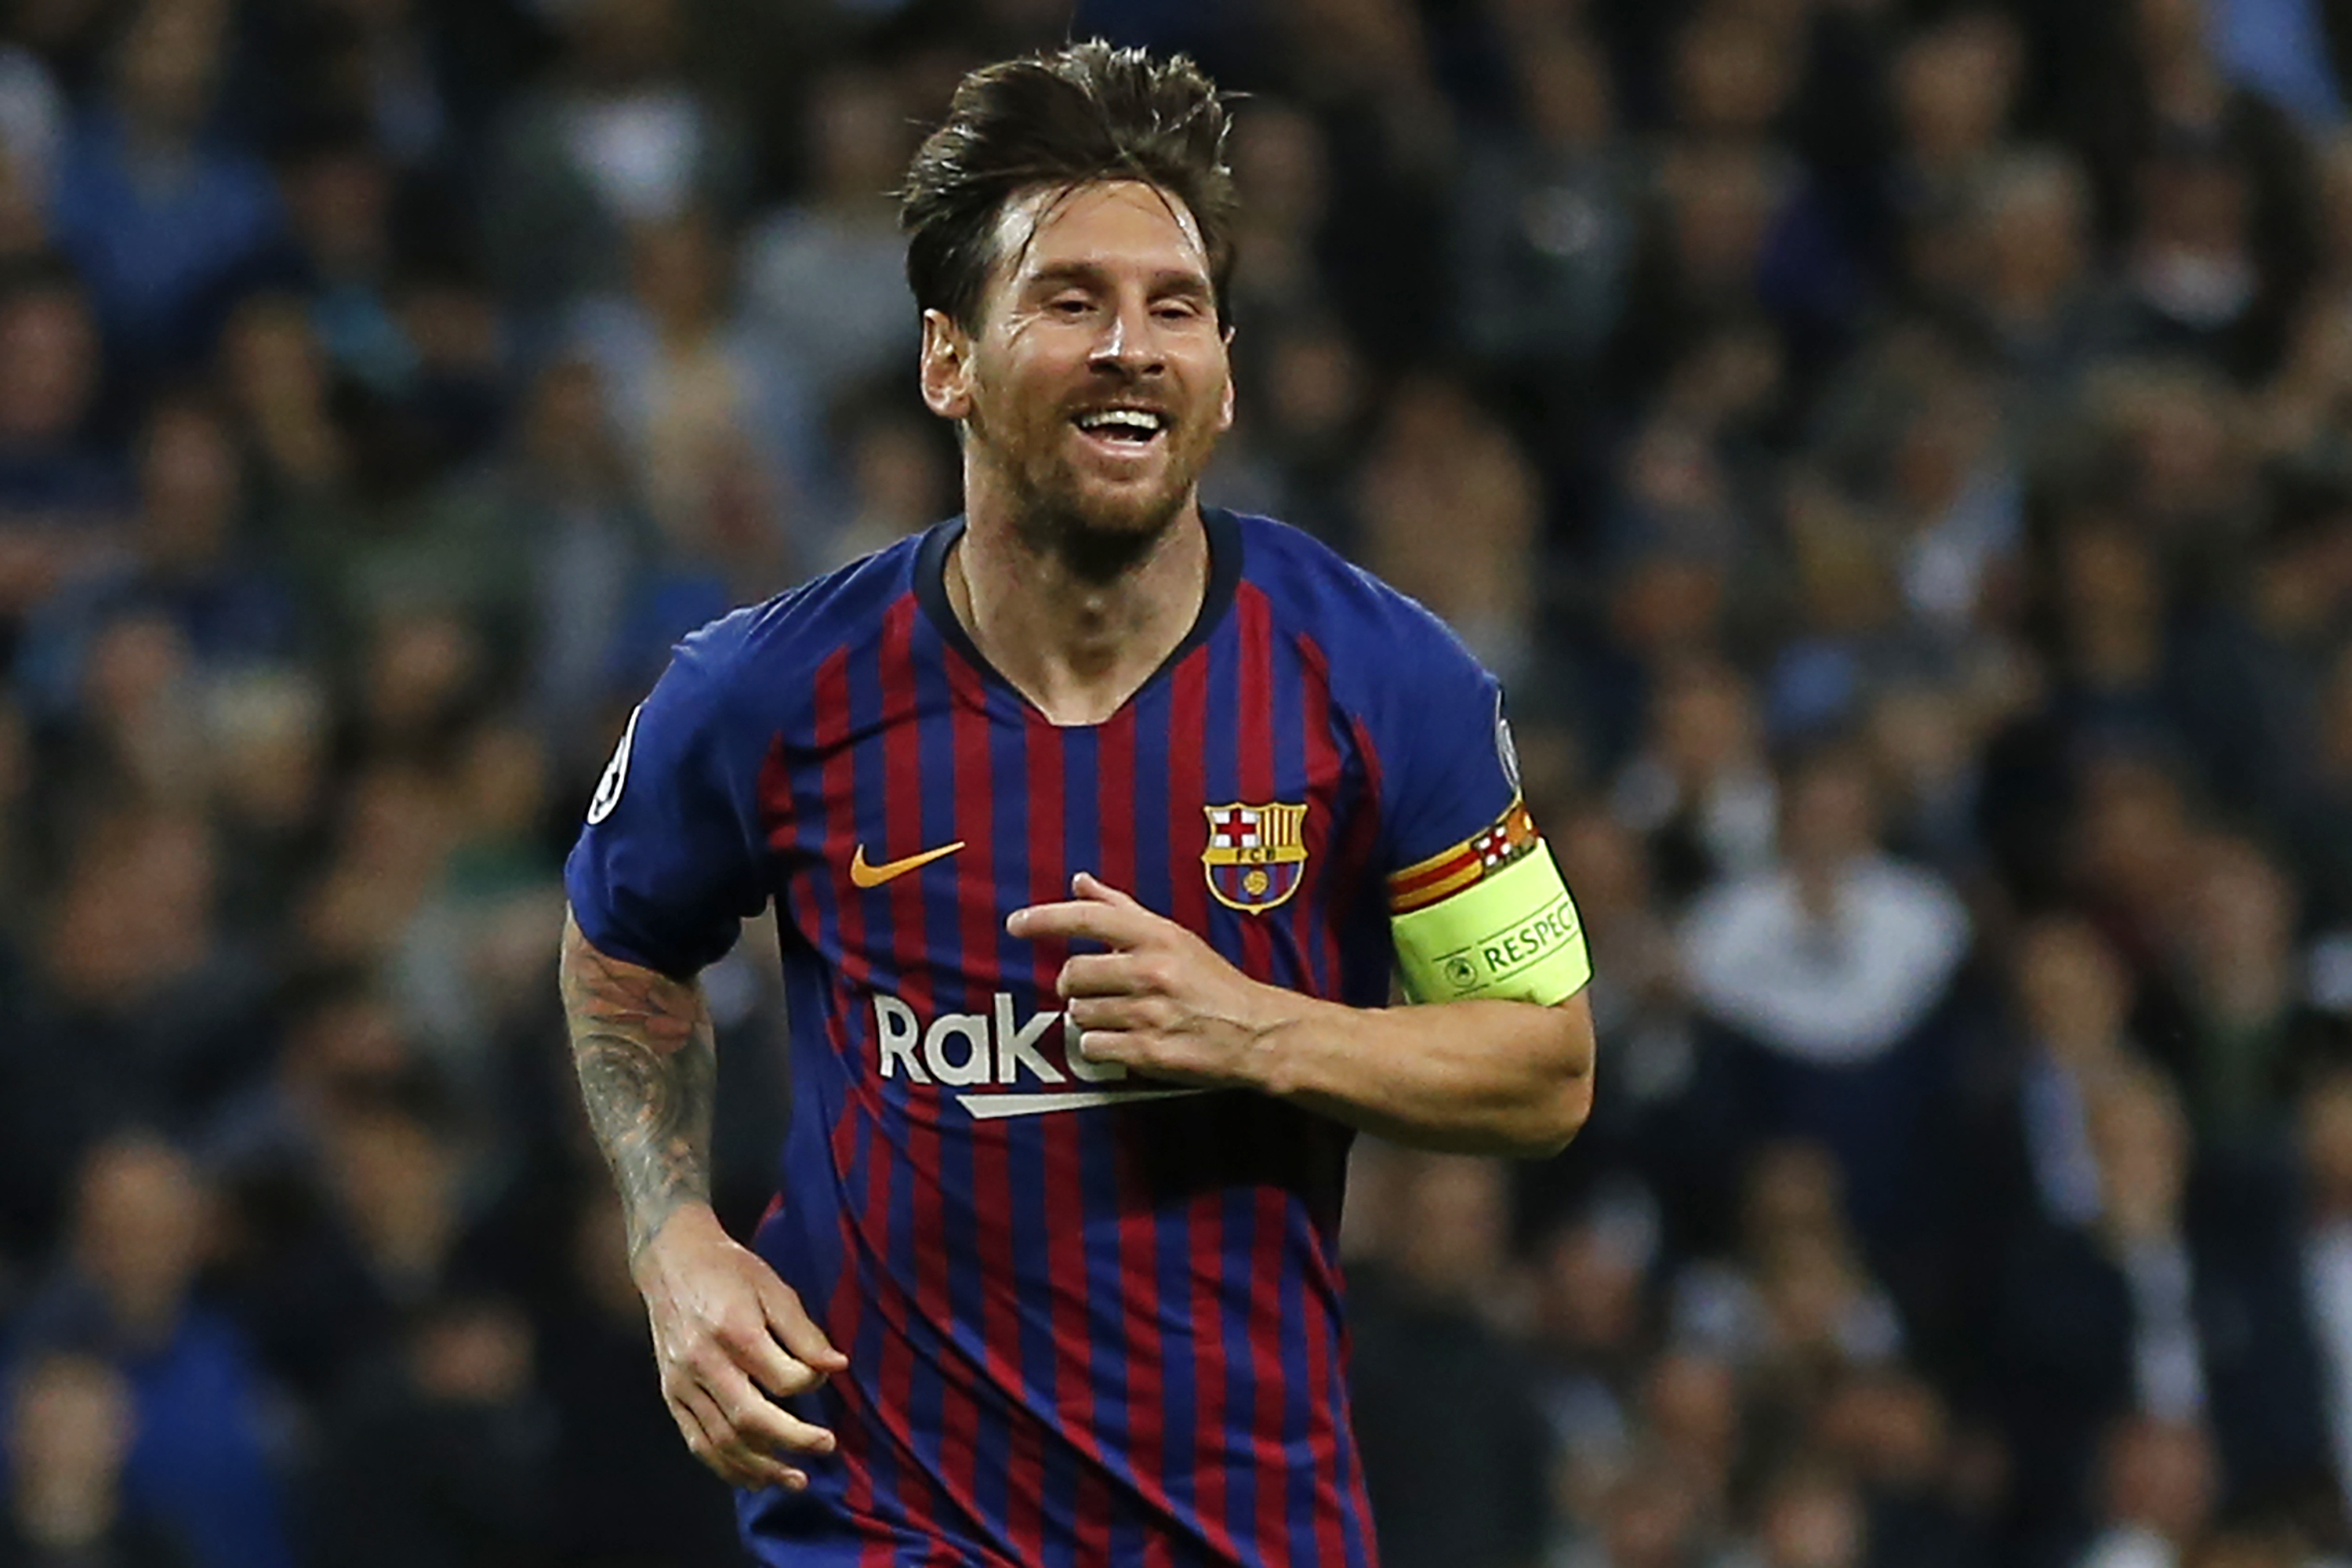 El Barça conquista Wembley gracias a un Lionel Messi determinante (Fotos)